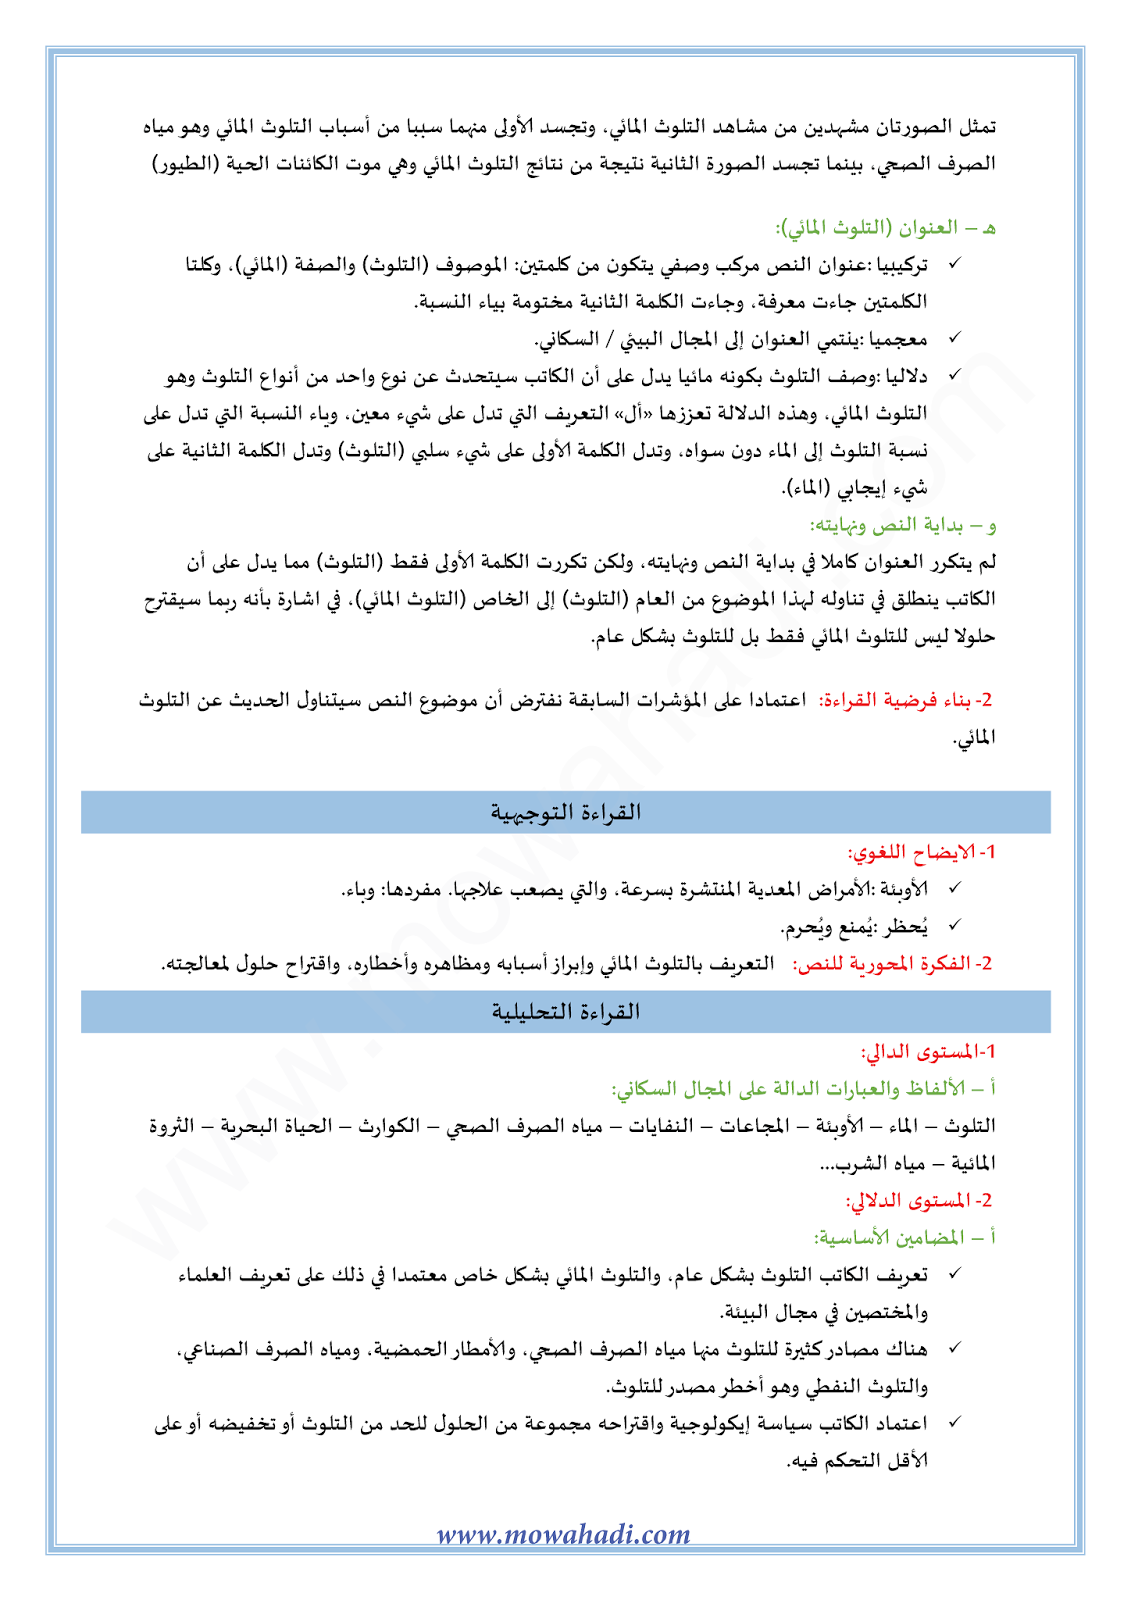 تحضير النص القرائي التلوث المائي للسنة الثالثة اعدادي في مادة اللغة العربية 19-cours-ar-almokhtar3_002